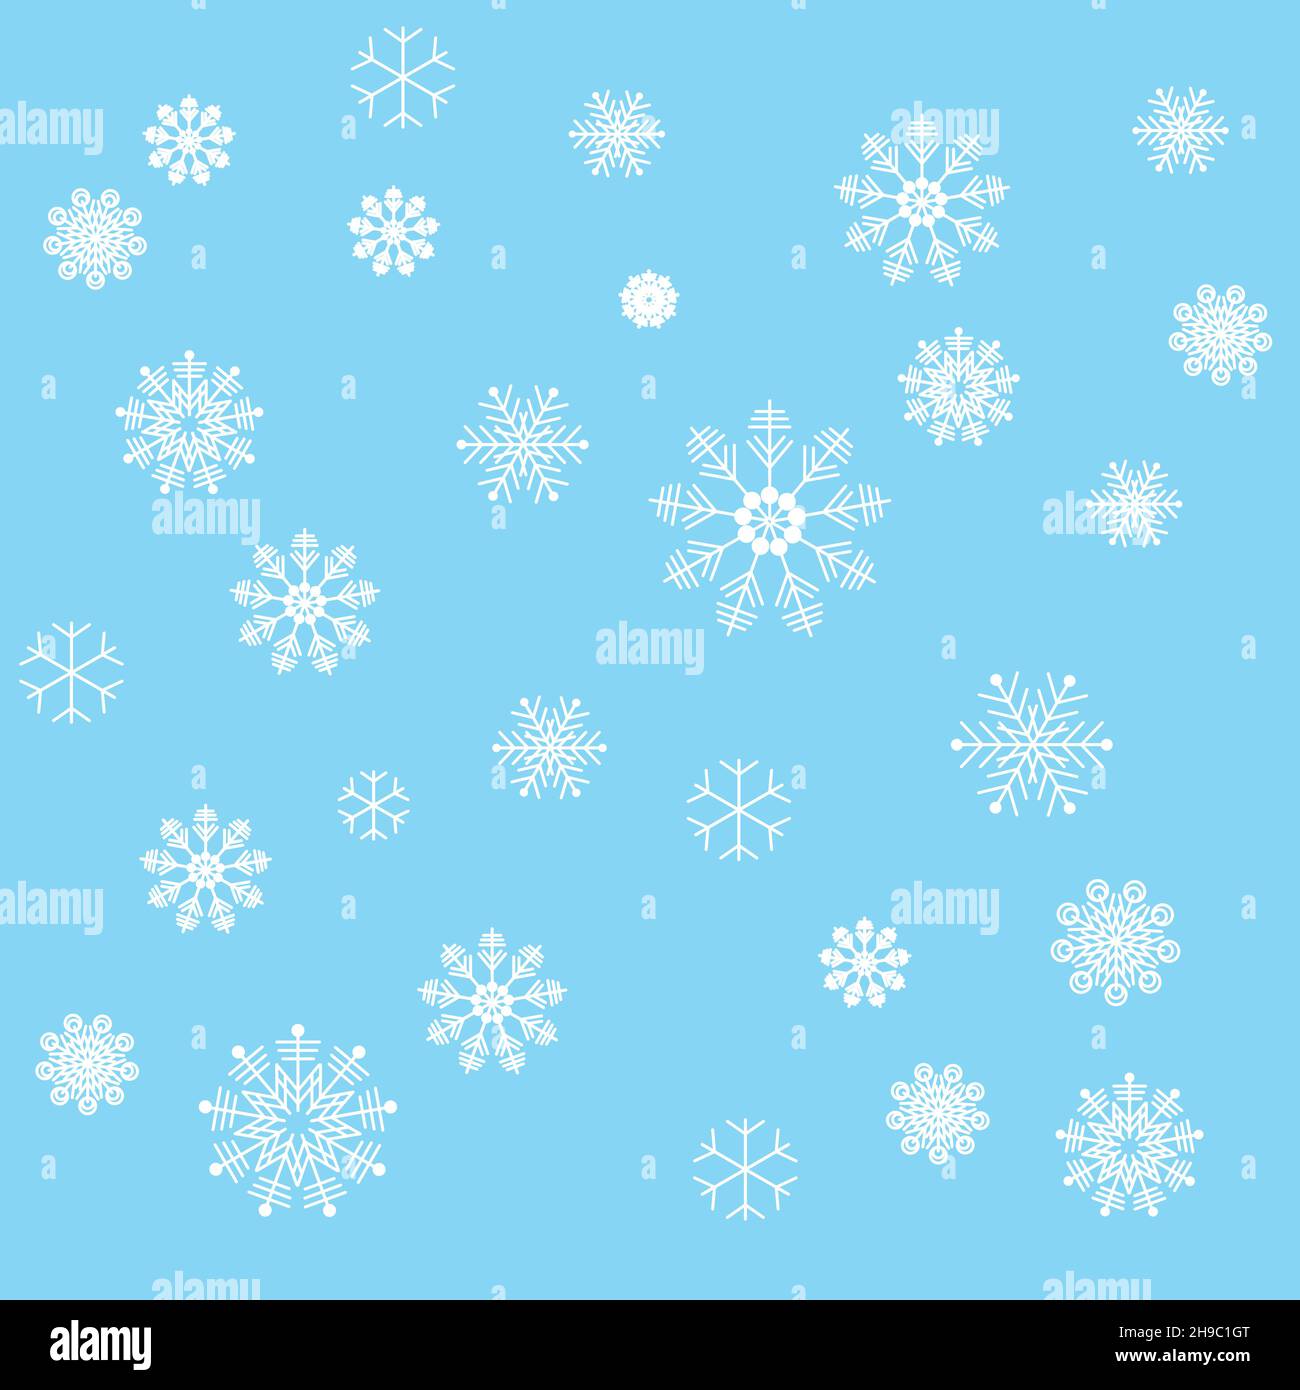 Illustration Weihnachtshintergrund mit Schneeflocken in verschiedenen Größen und Formen. Illustration im minimalistischen Stil, abstrakter Hintergrund. Stock Vektor